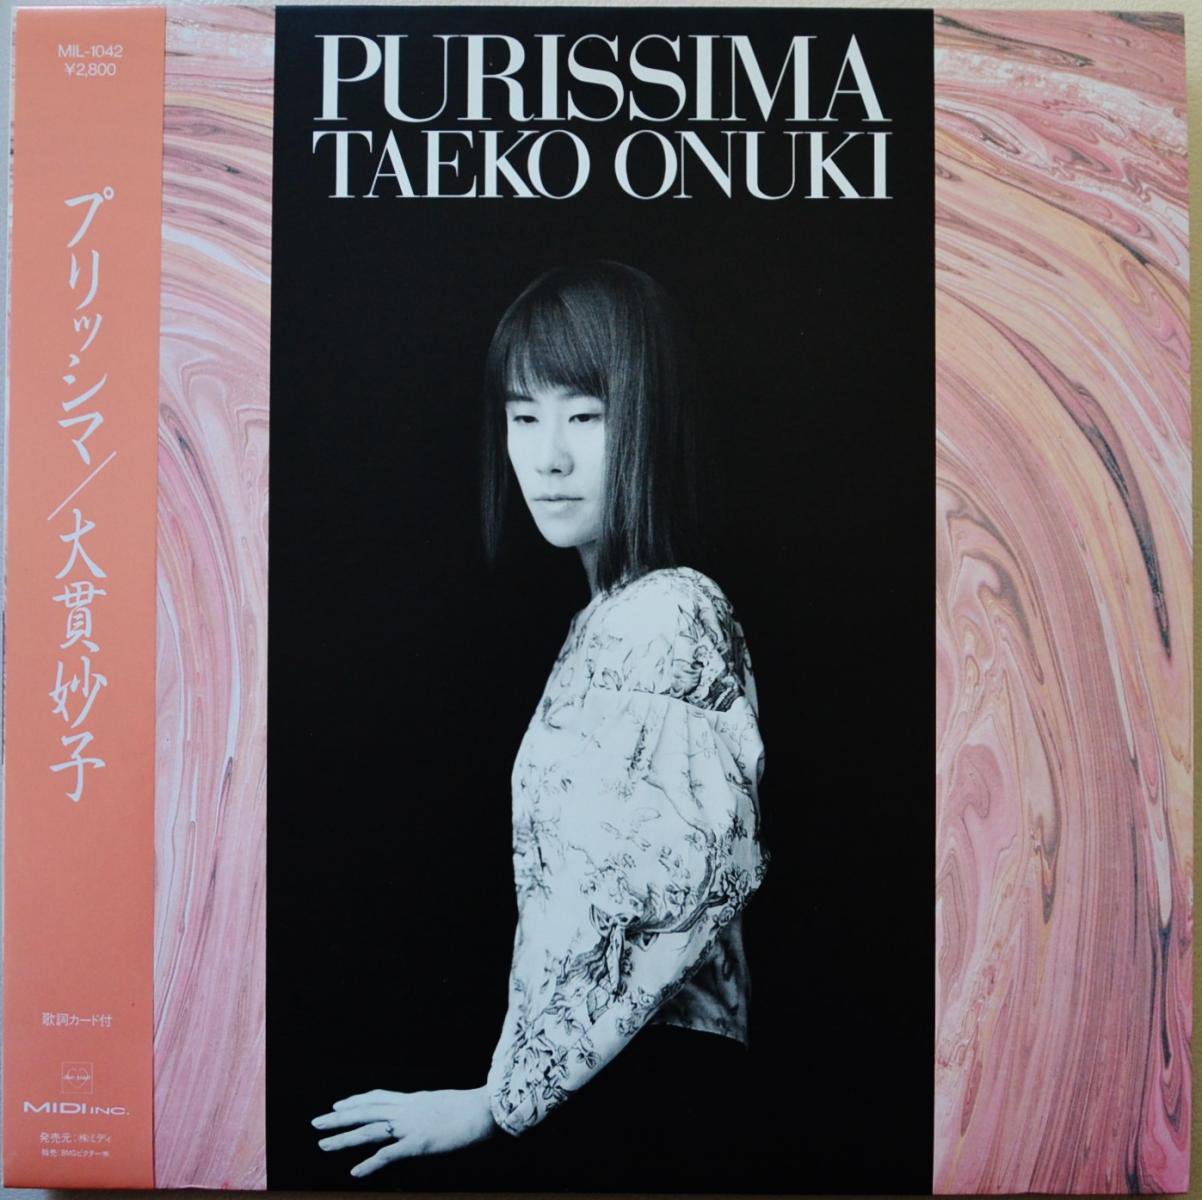 大貫妙子 TAEKO OHNUKI / プリッシマ PURISSIMA (LP)